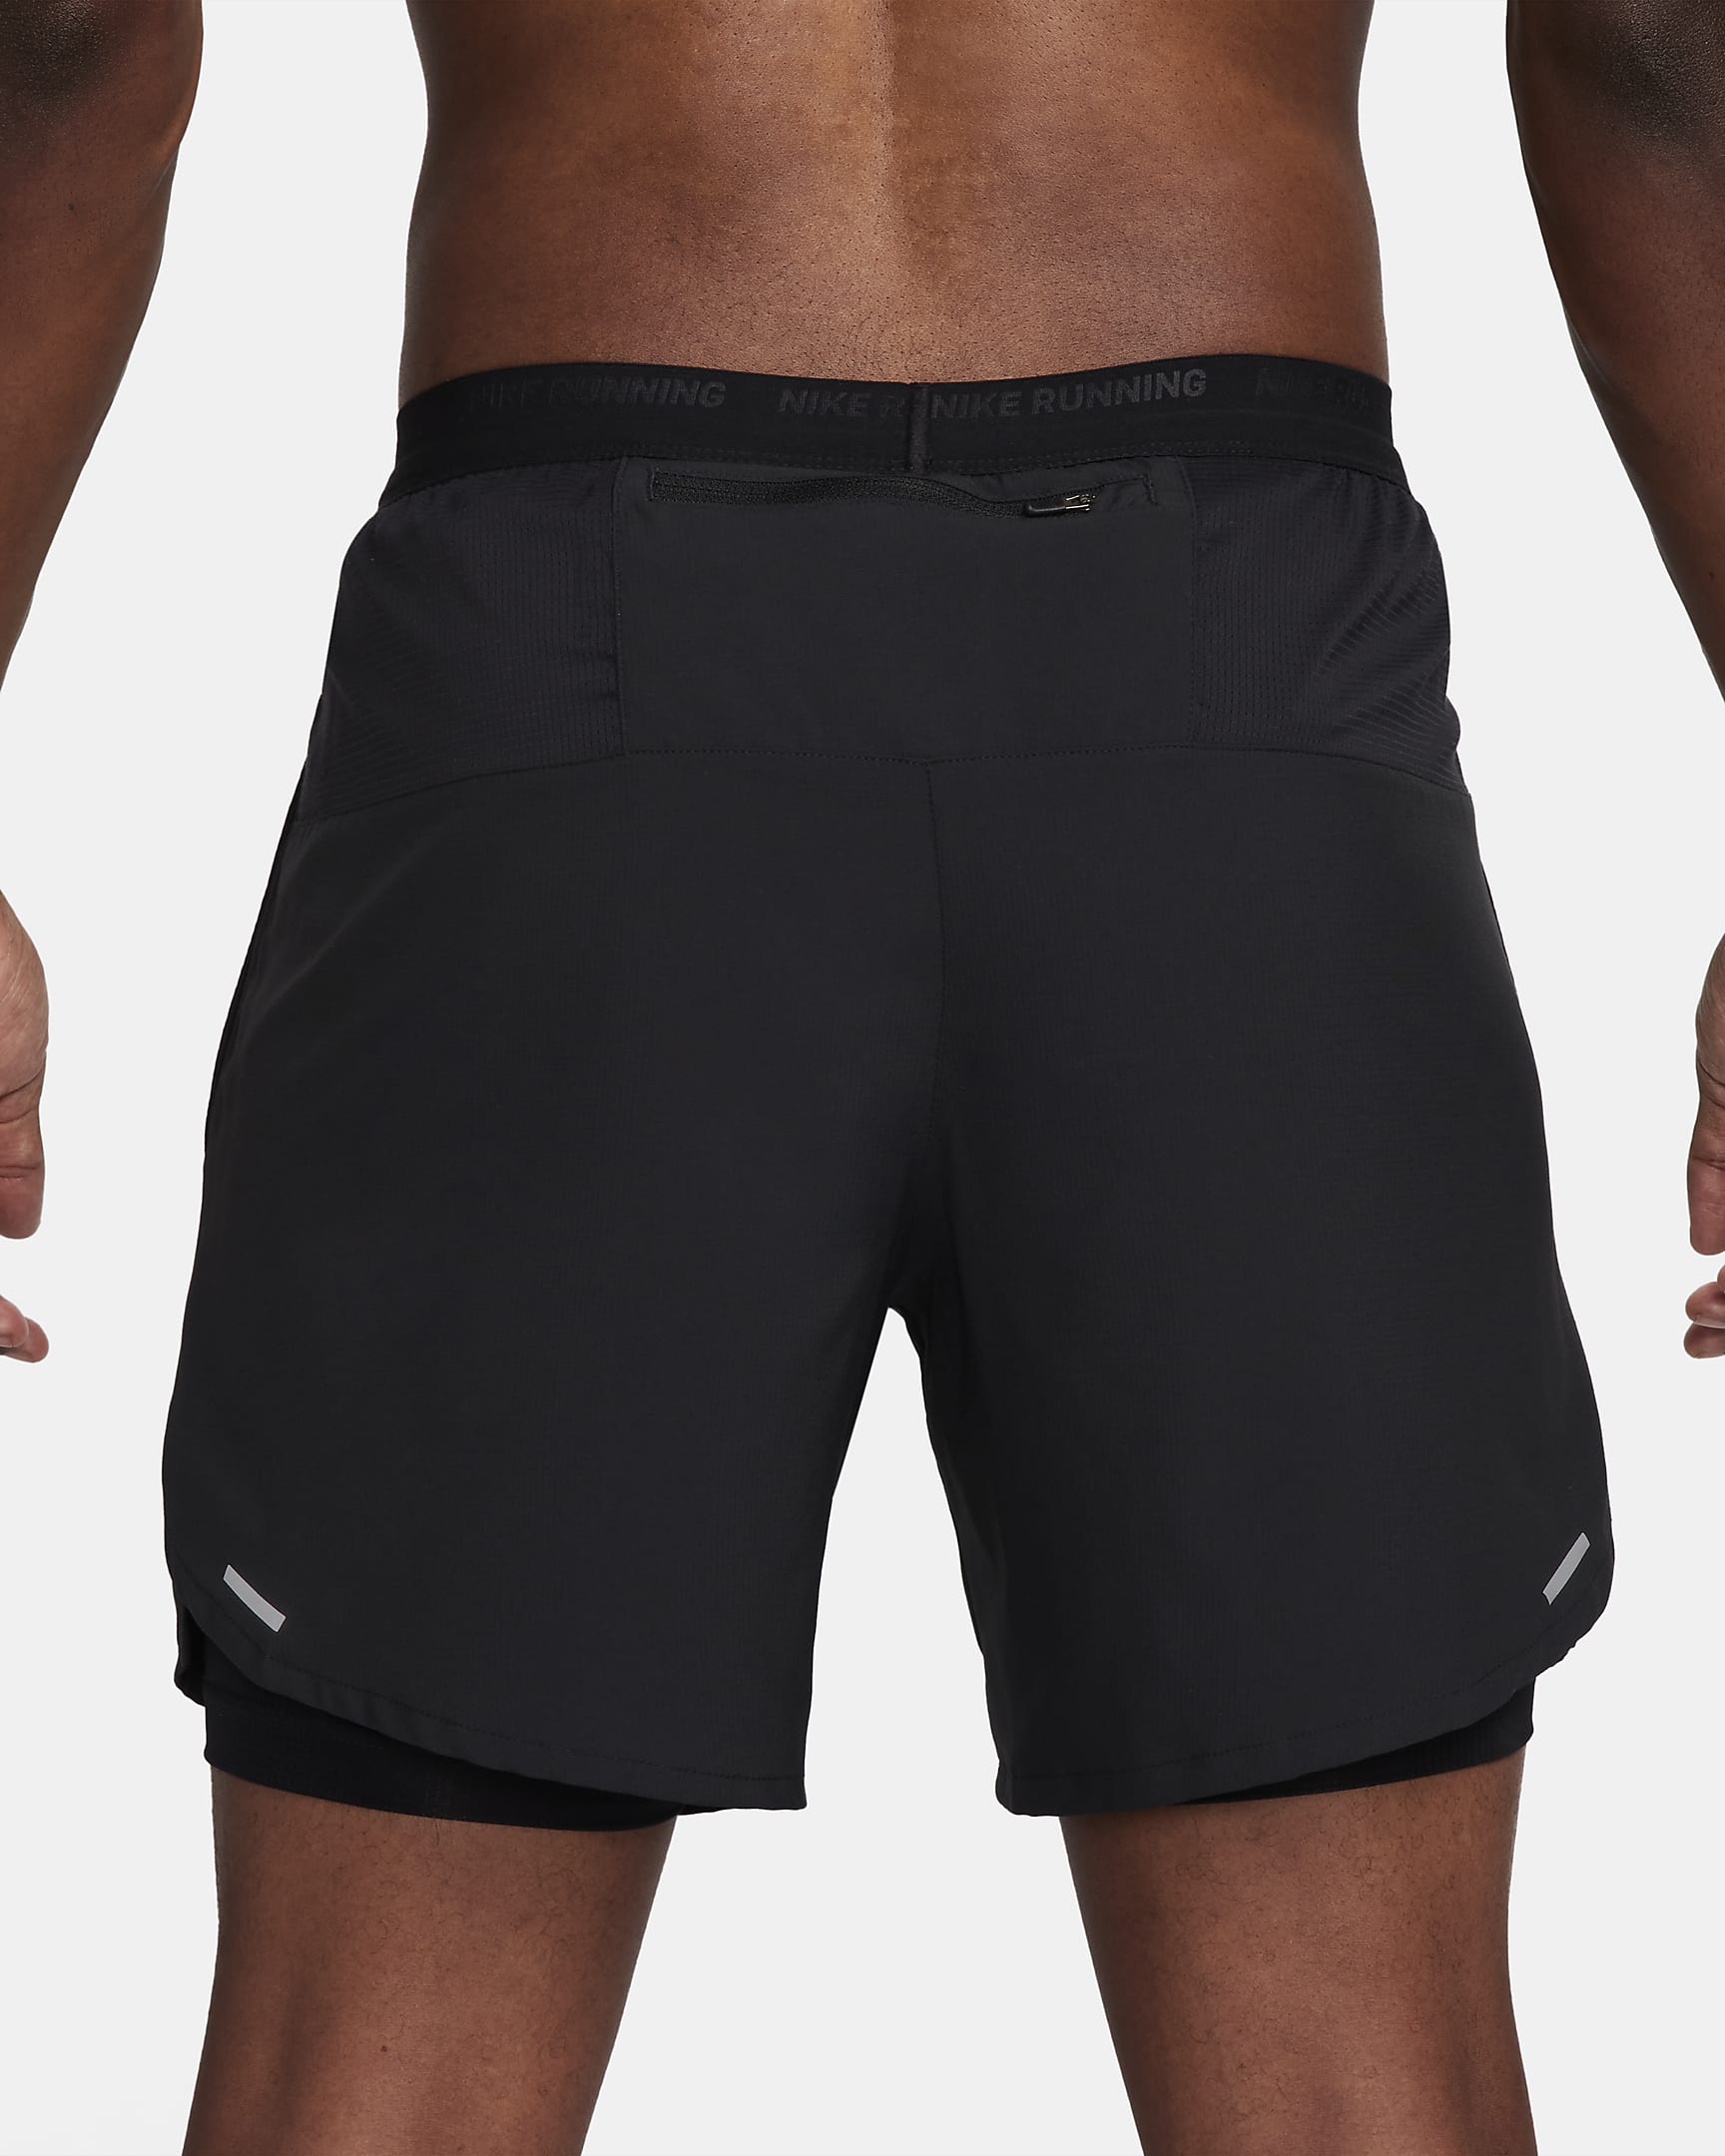 Nike Stride Dri-FIT-2-i-1-løbeshorts (18 cm) til mænd - sort/sort/sort